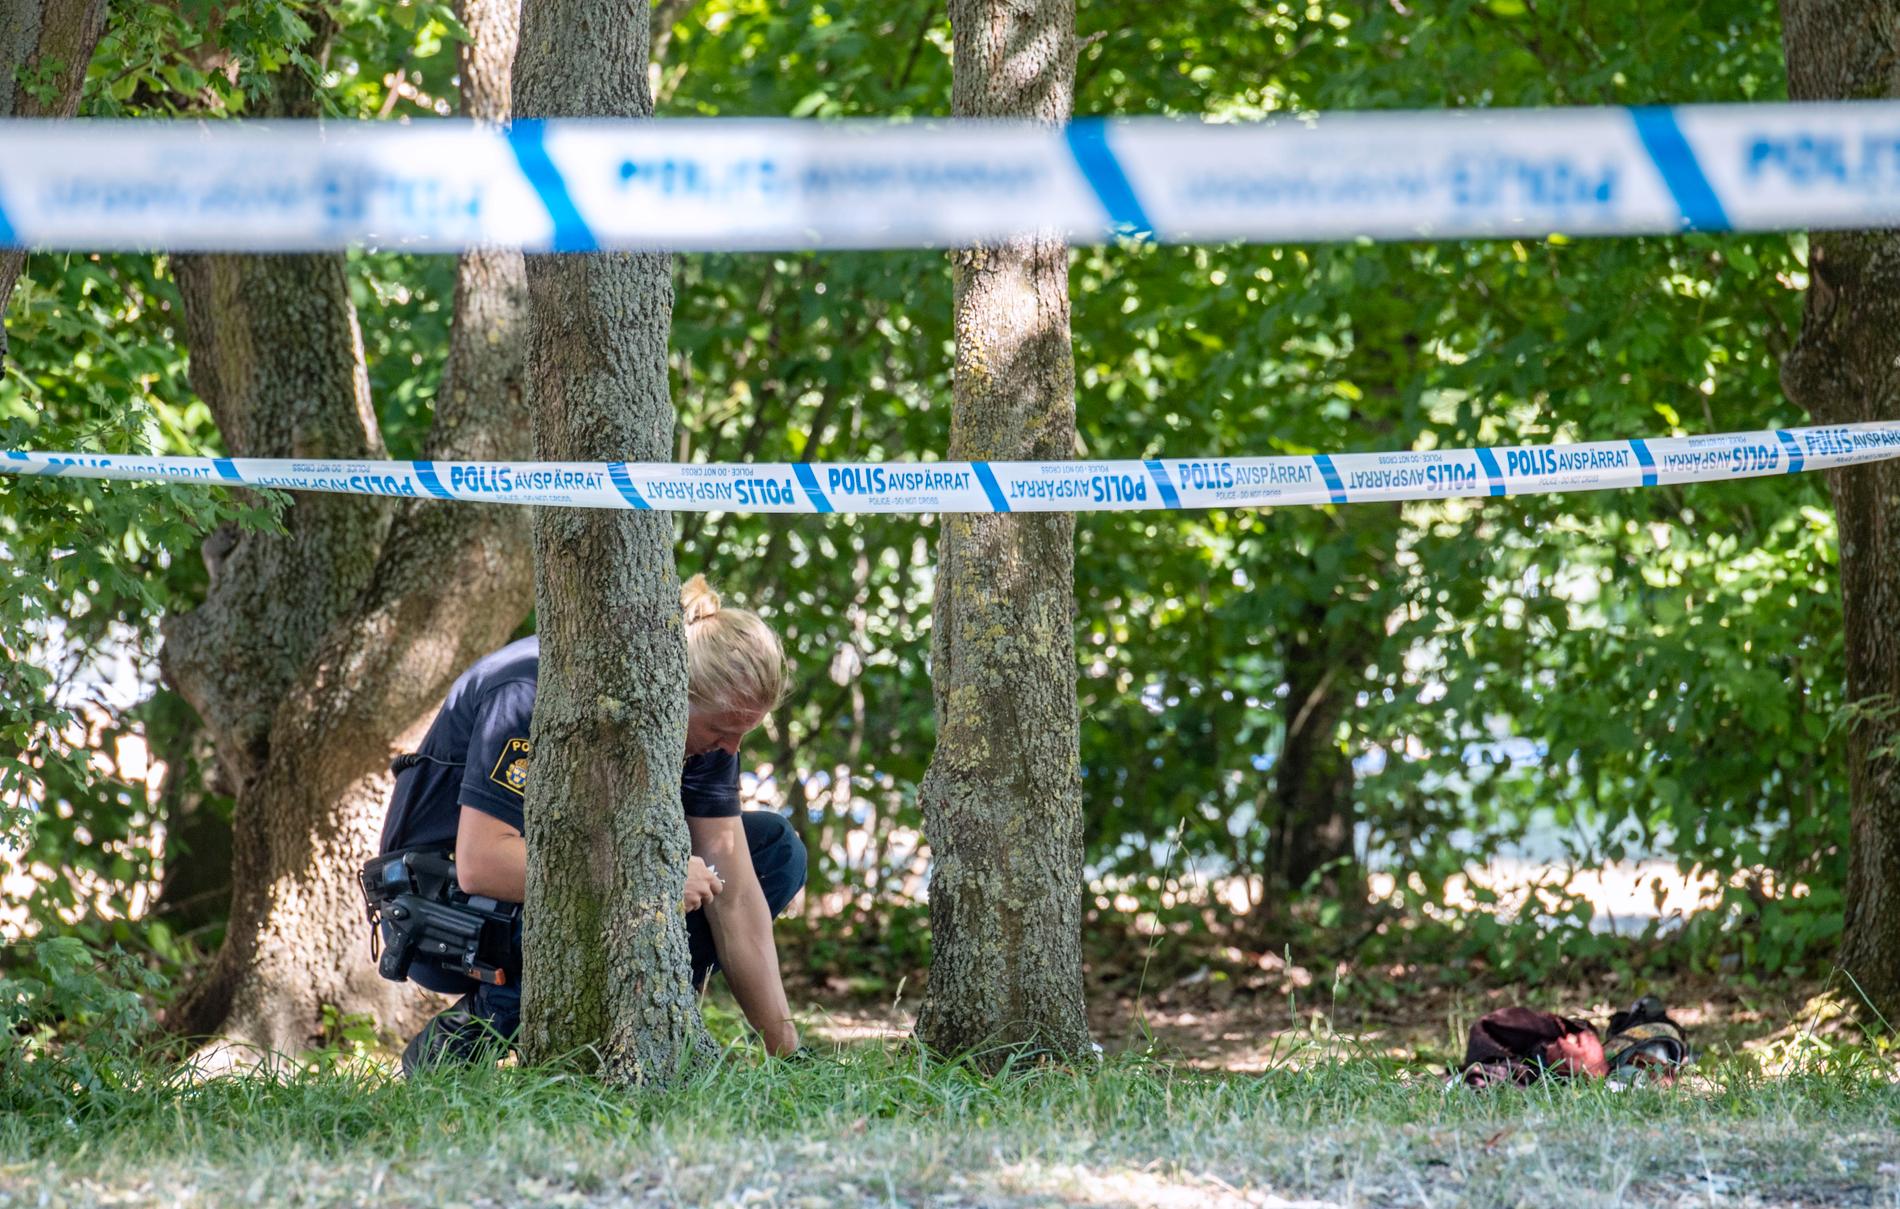 Polis och avspärrningar vid Nydalaparken i Malmö efter en skottlossning i början av juli förra året, som ledde till att en man dog och en blev allvarligt skadad. Arkivbild.